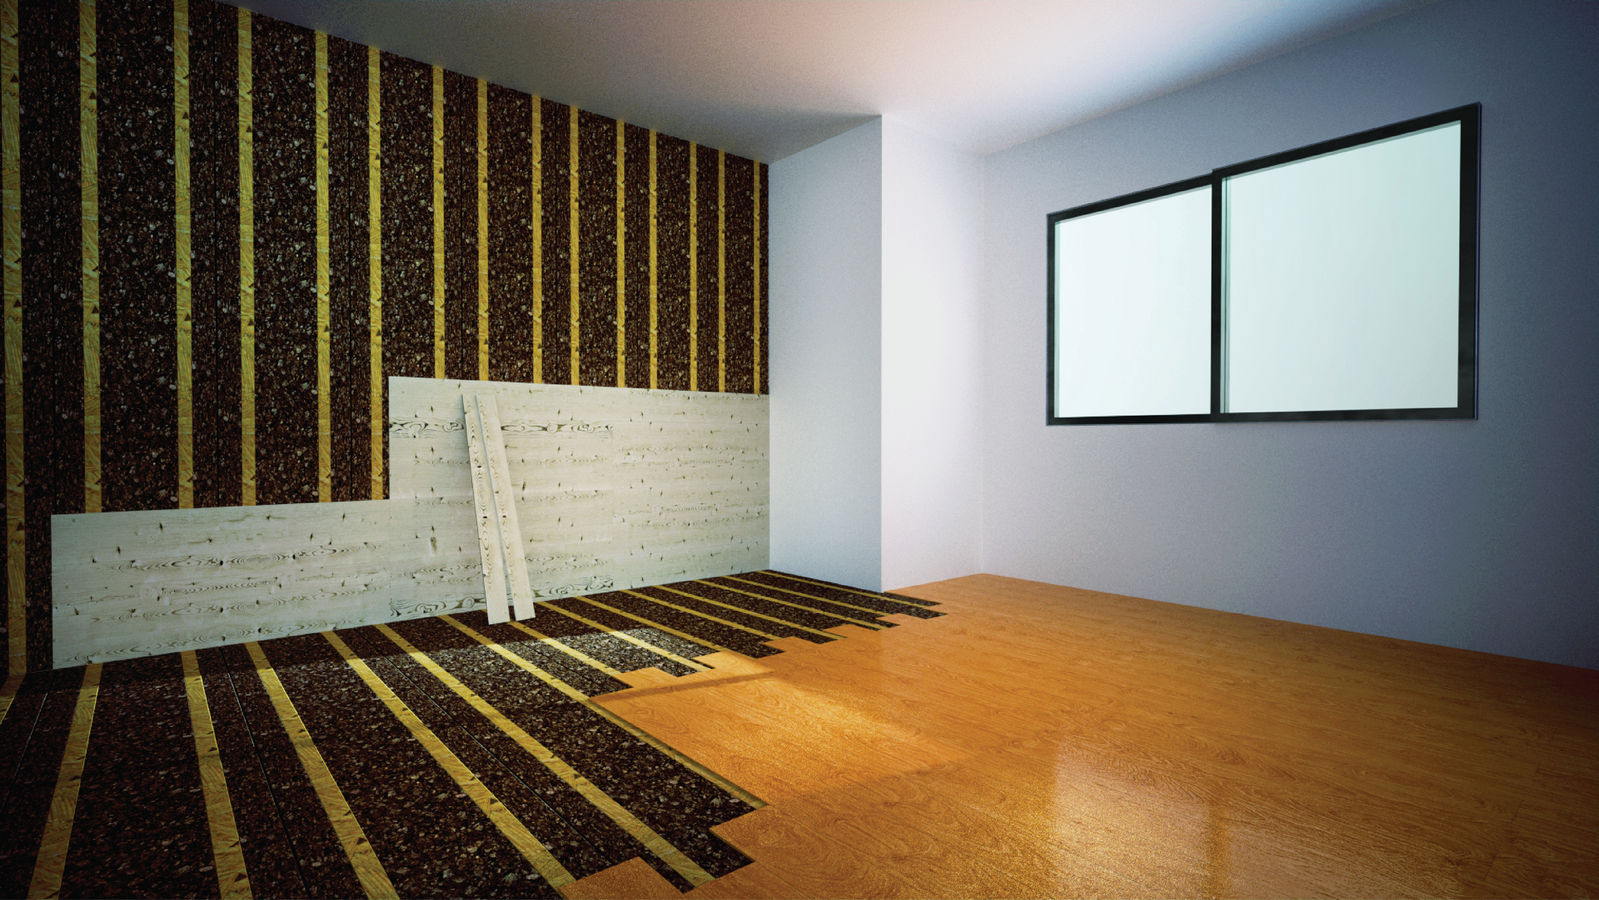 Tendrías una pared de corcho para aislar y decorar tu hogar? - Planeta  Arquitectura